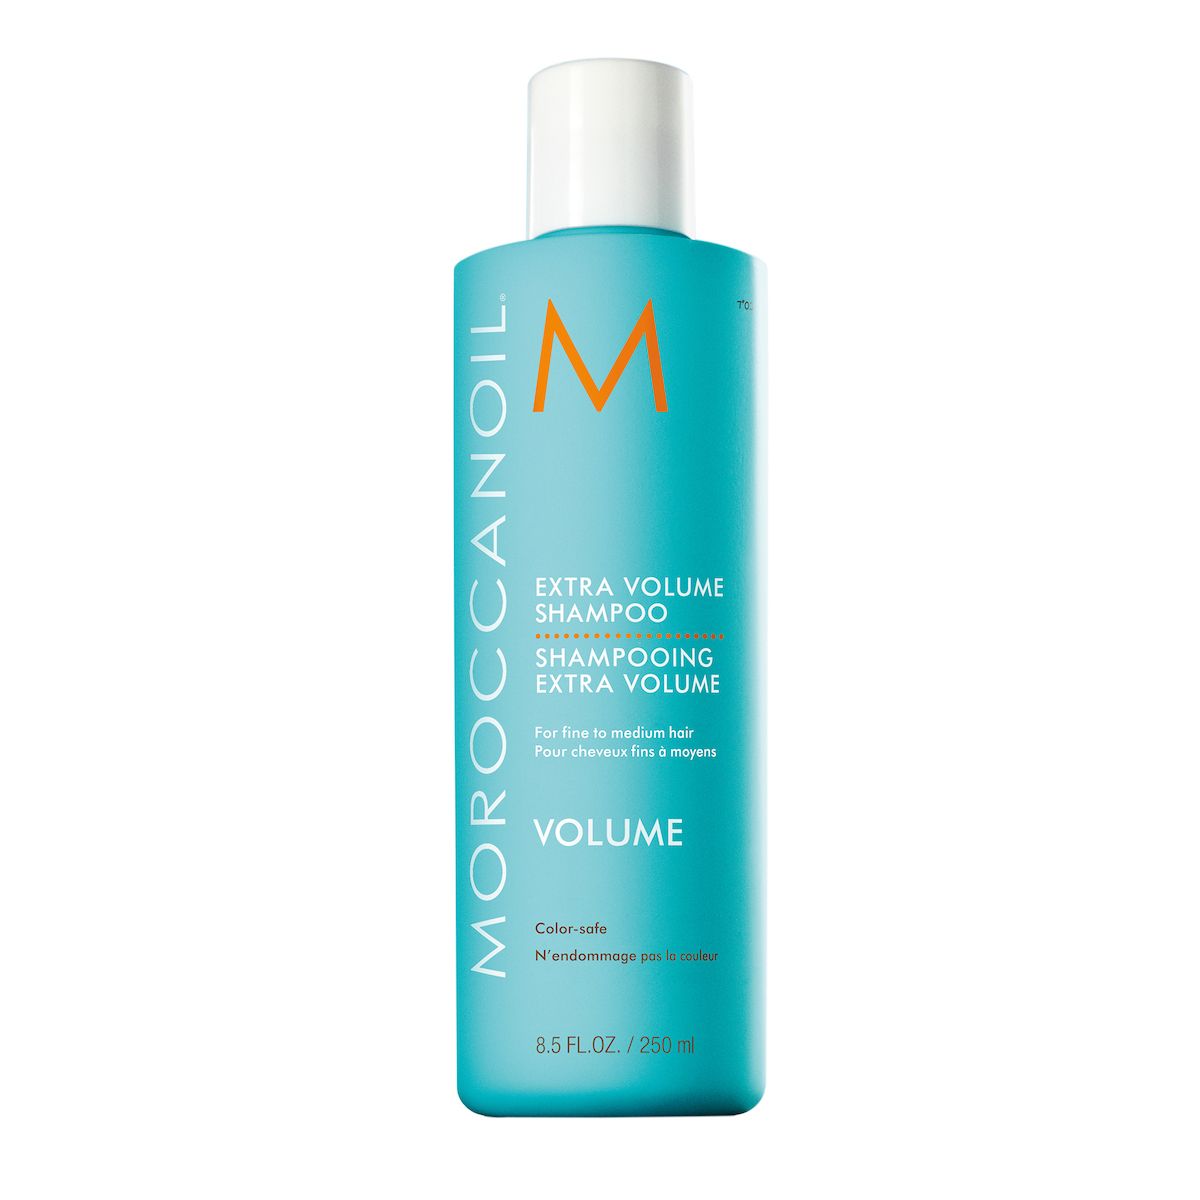 Idéal pour les cheveux fins, l'Extra Volume Shampoo de Moroccanoil ne risque pas de les alourdir. Cet après-shampoing offre un effet volumateur très intéressant.